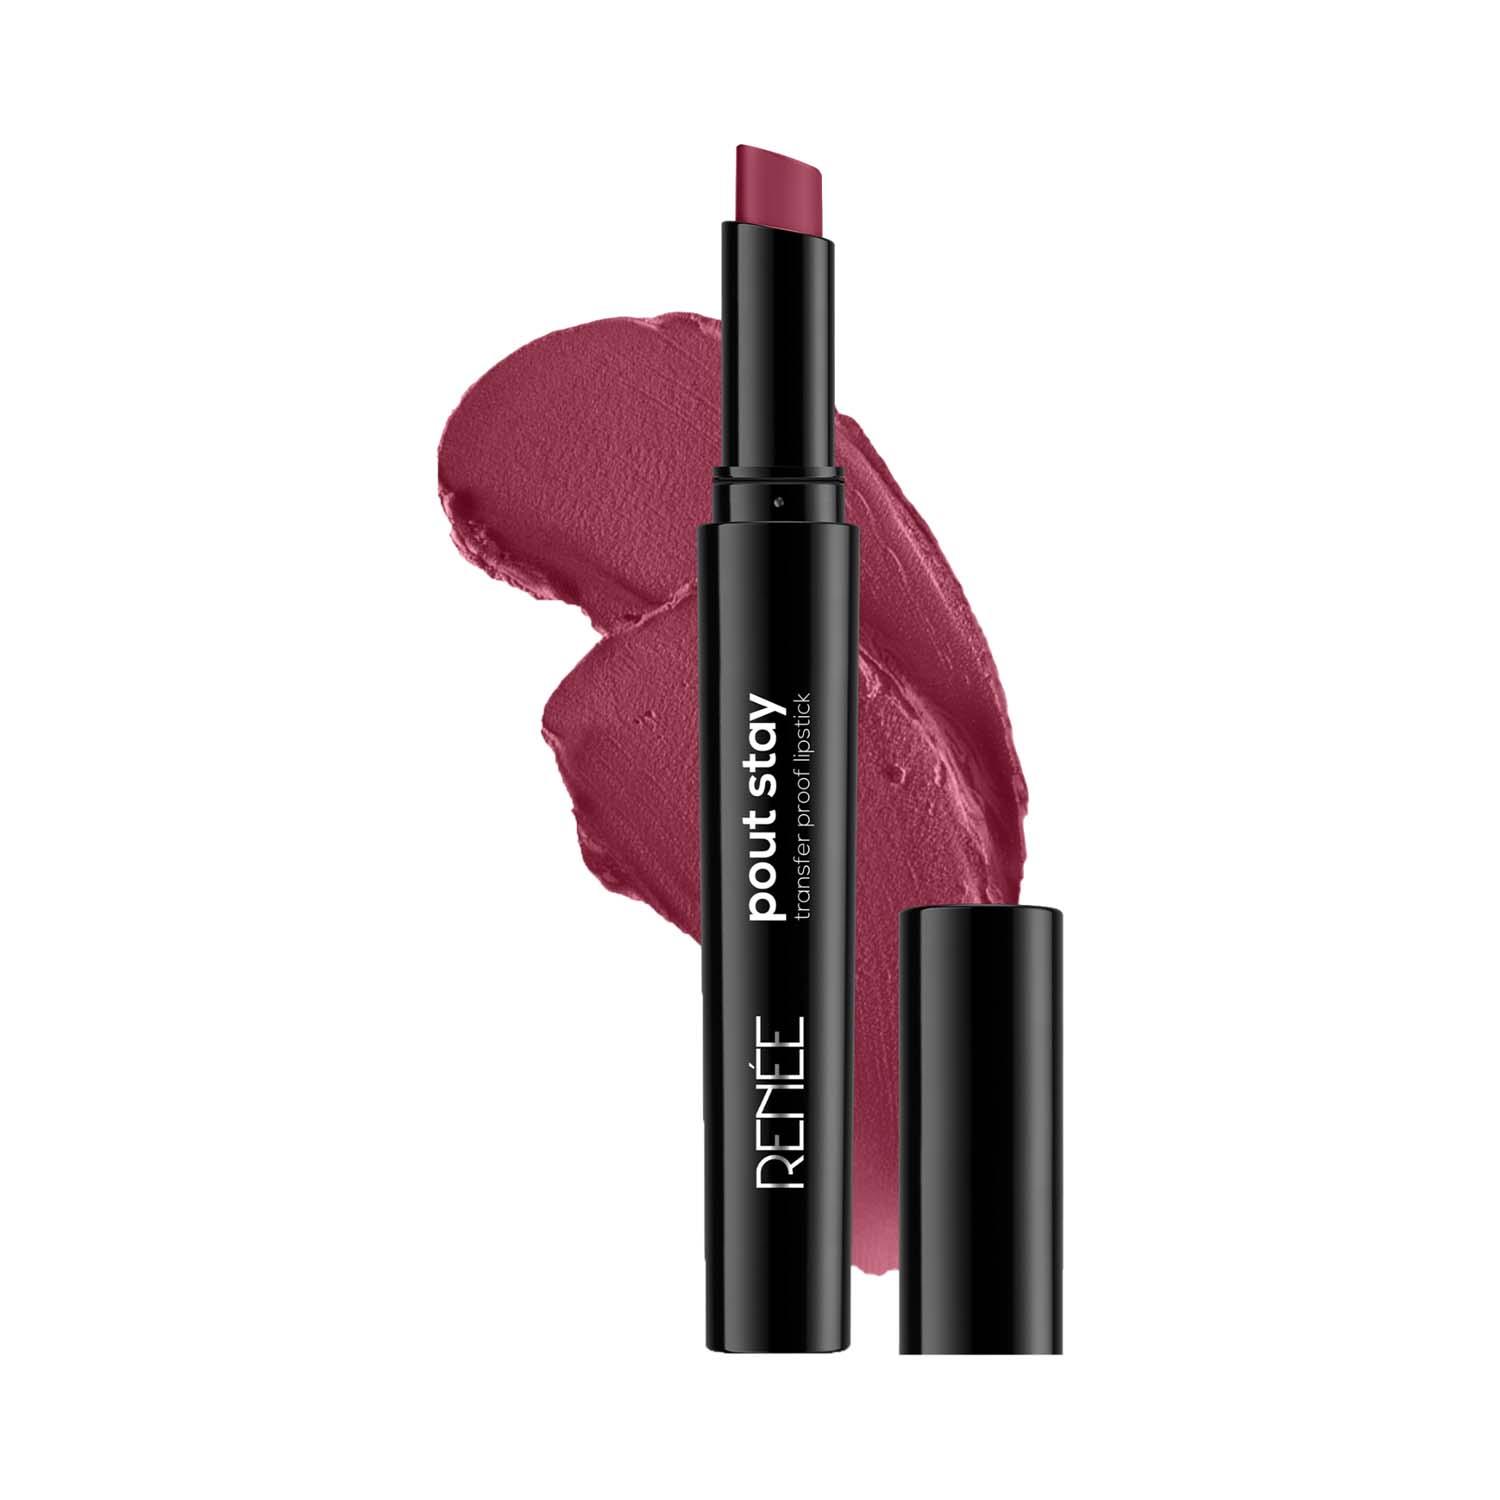 RENEE | RENEE Poutstay Transfer Proof Lipstick - 09 Kira (2 g)